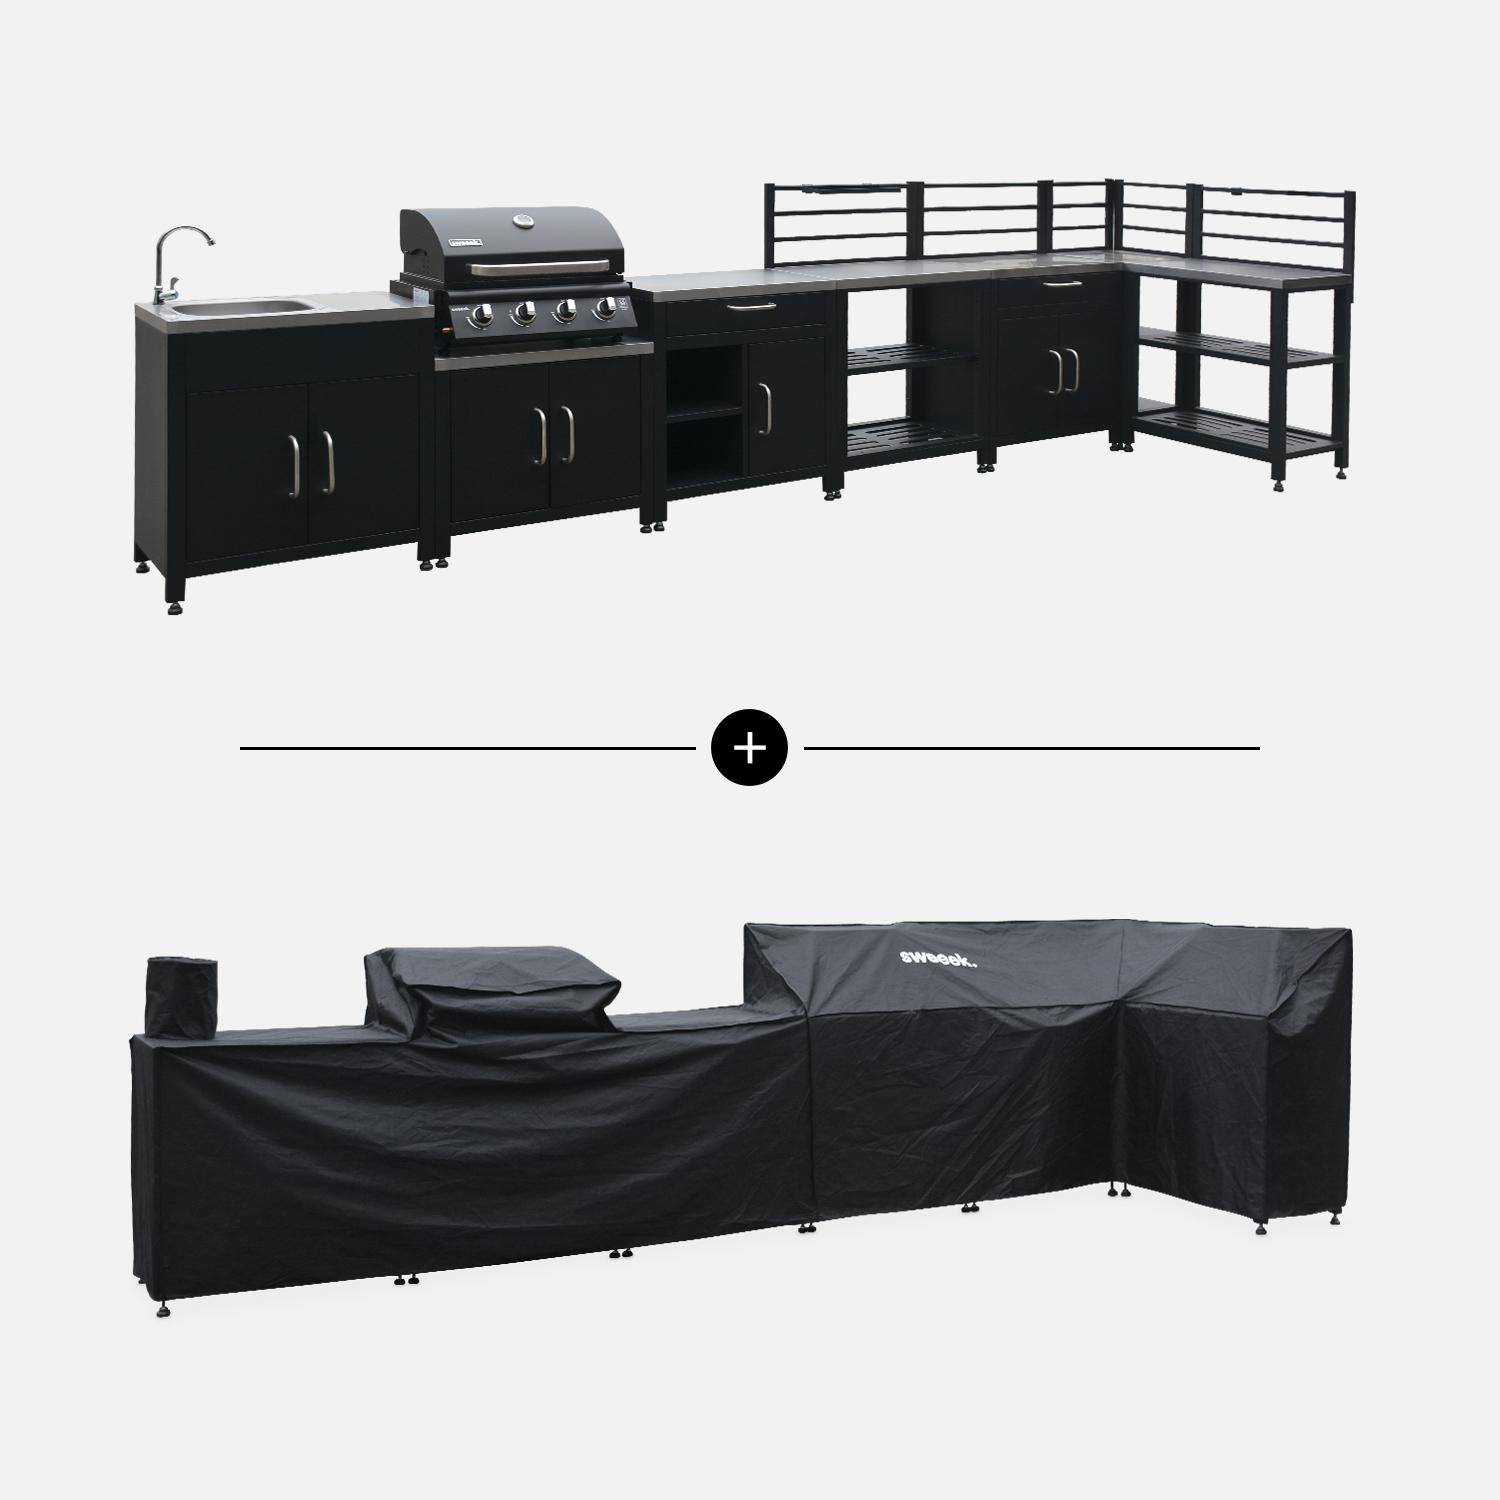 Ensemble de meubles de cuisine extérieure en acier inoxydable 8 modules avec barbecue au gaz 4 brûleurs et housse de protection Photo1